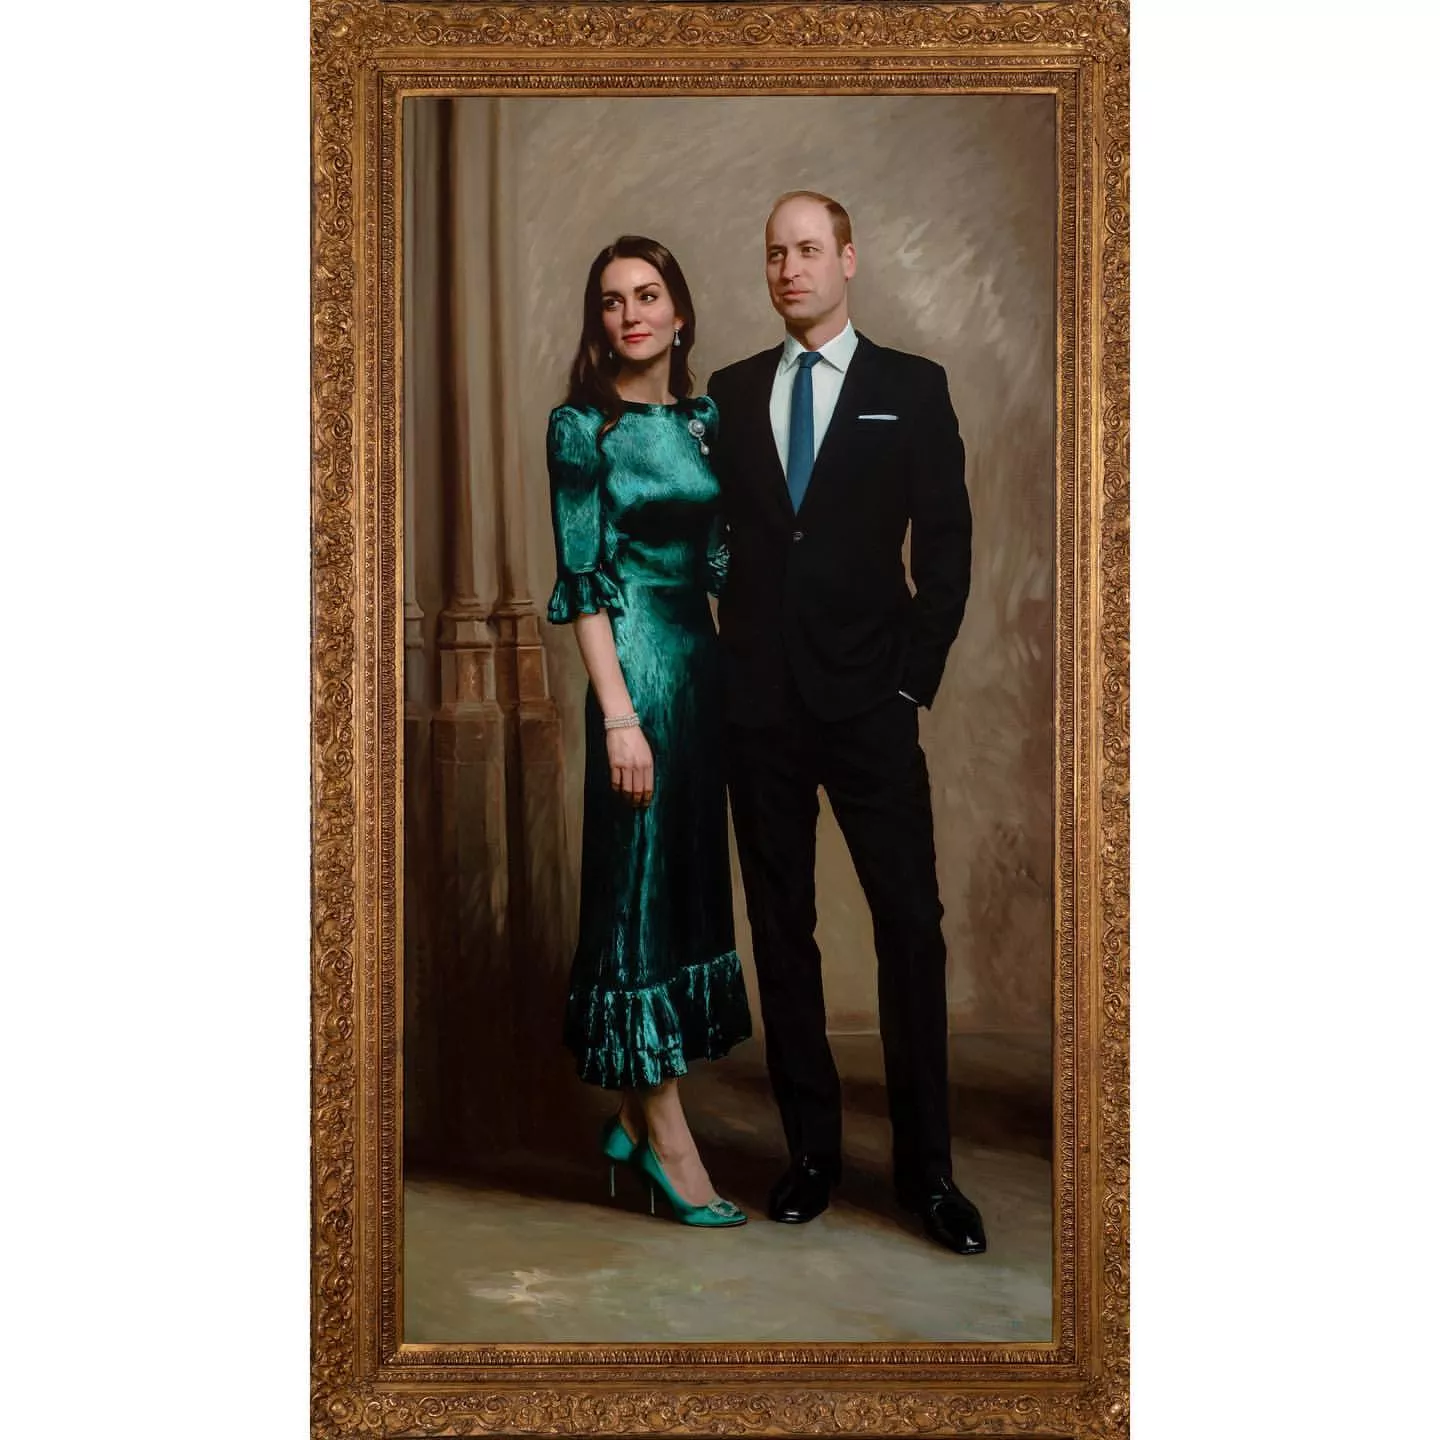 Перший офіційний портрет принца Вільяма та Кейт Міддлтон